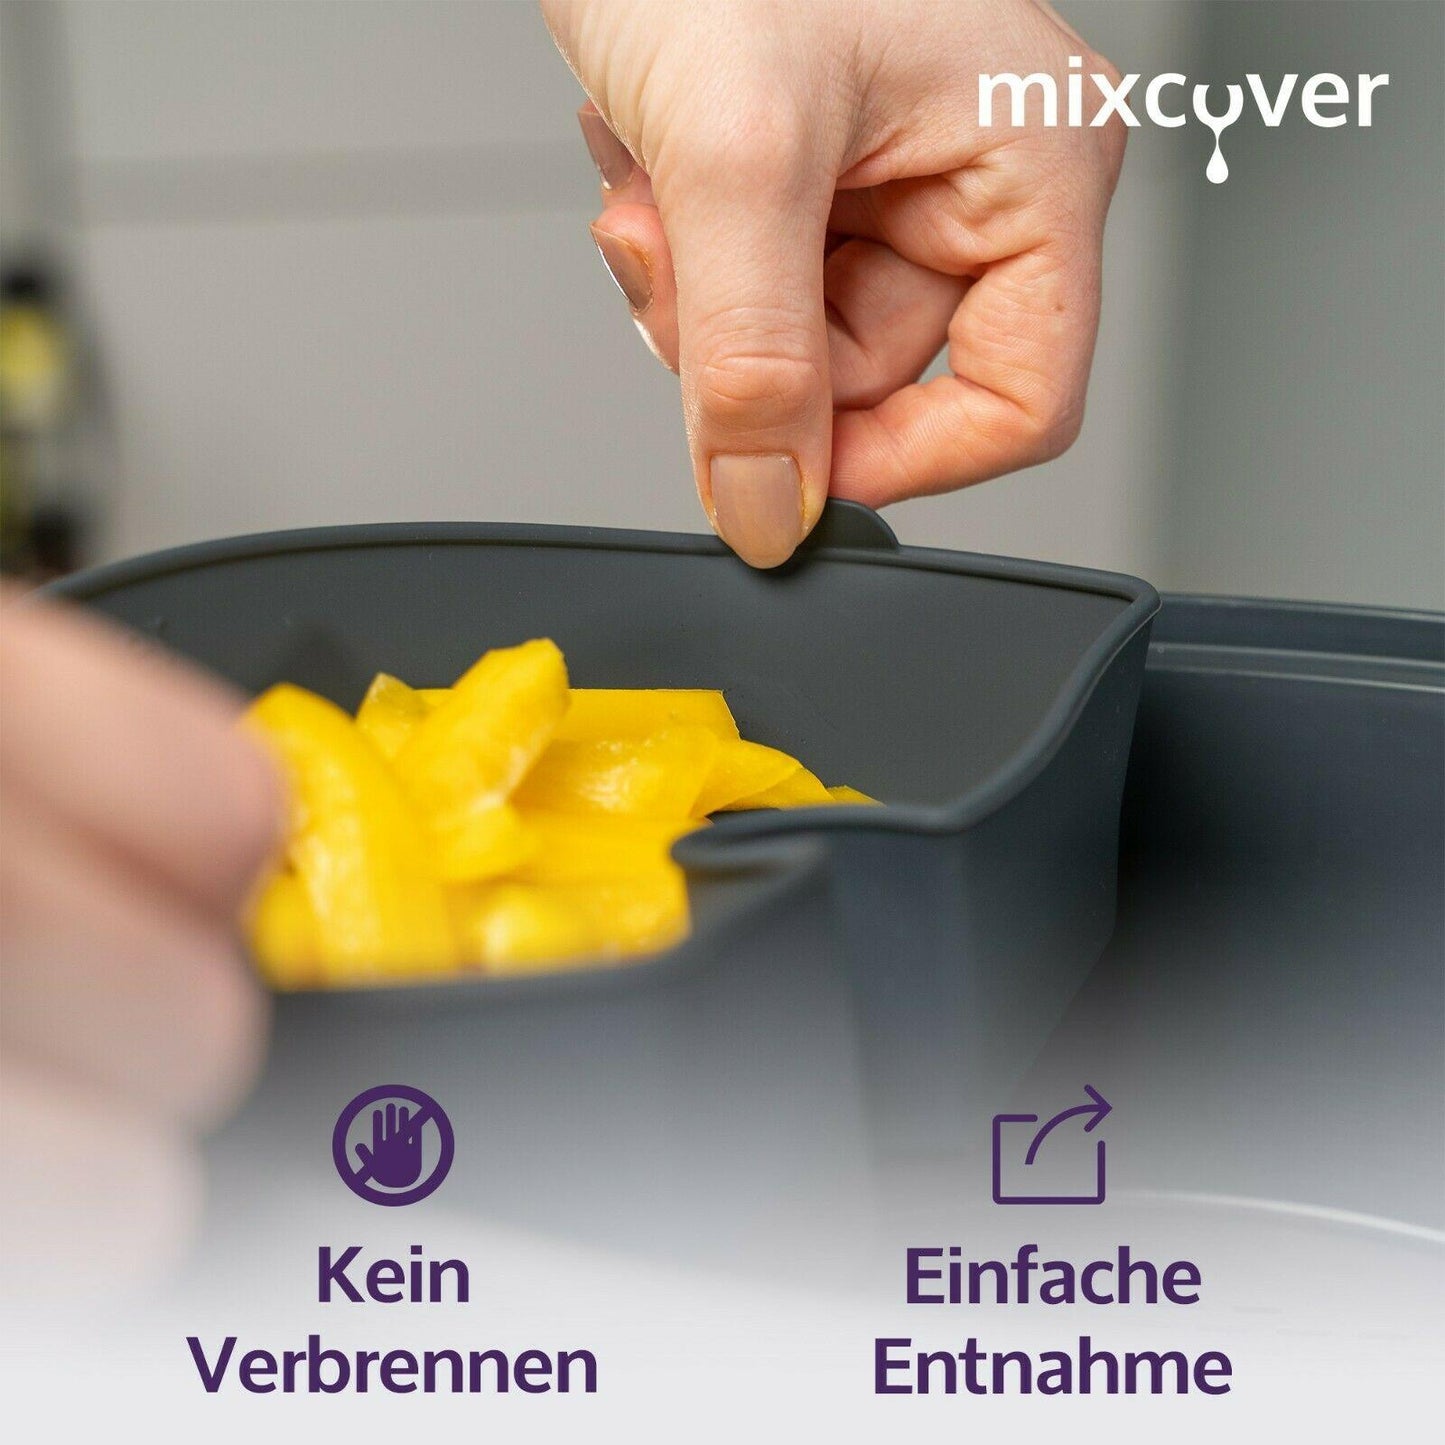 mixcover Garraumteiler (HALB) für Thermomix Varoma Dampfgarraum - Mixcover - Mixcover